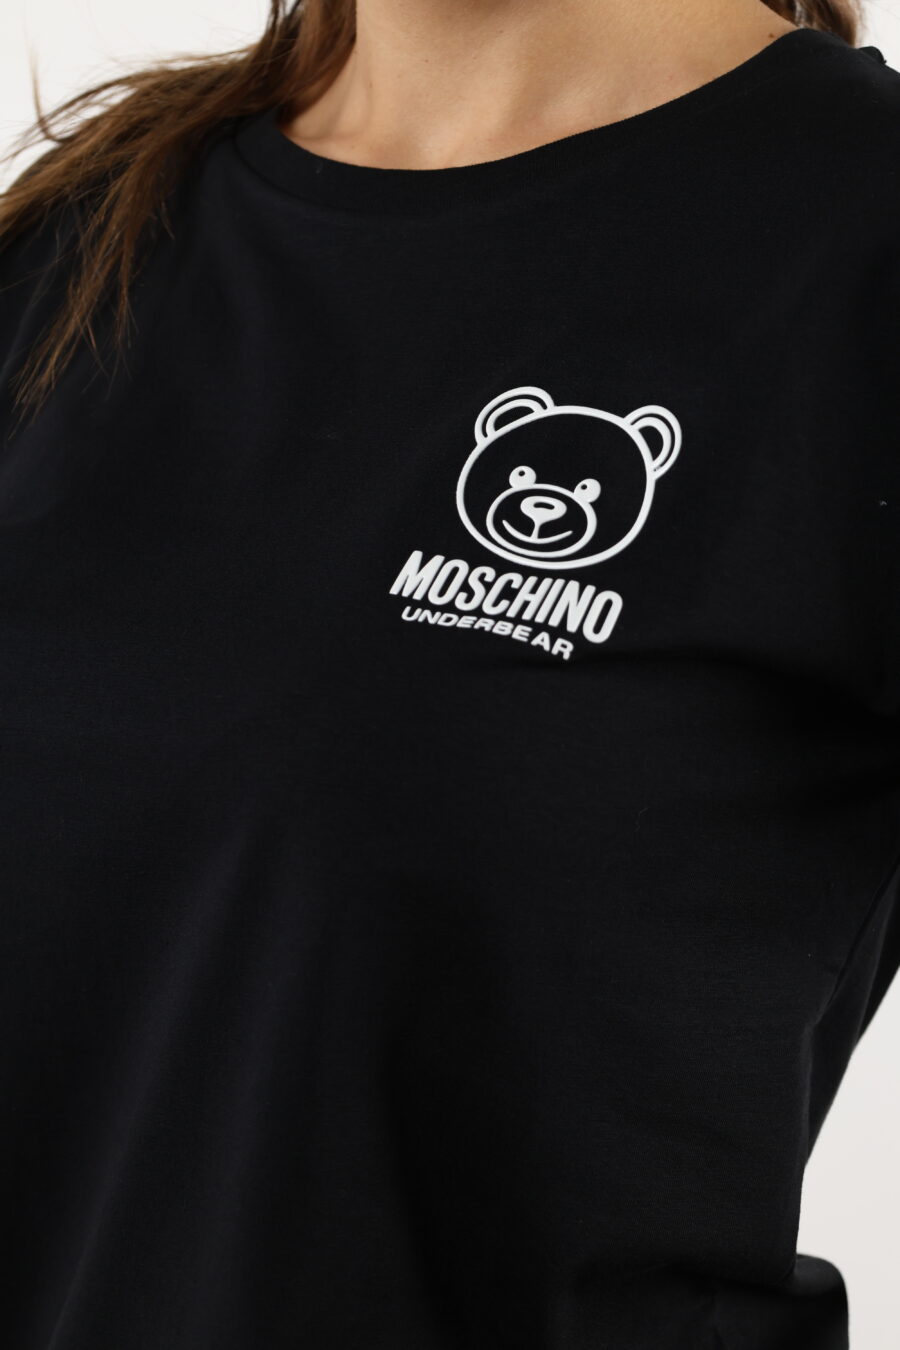 Schwarzes T-Shirt mit weißem Bär-Minilogo - 110528